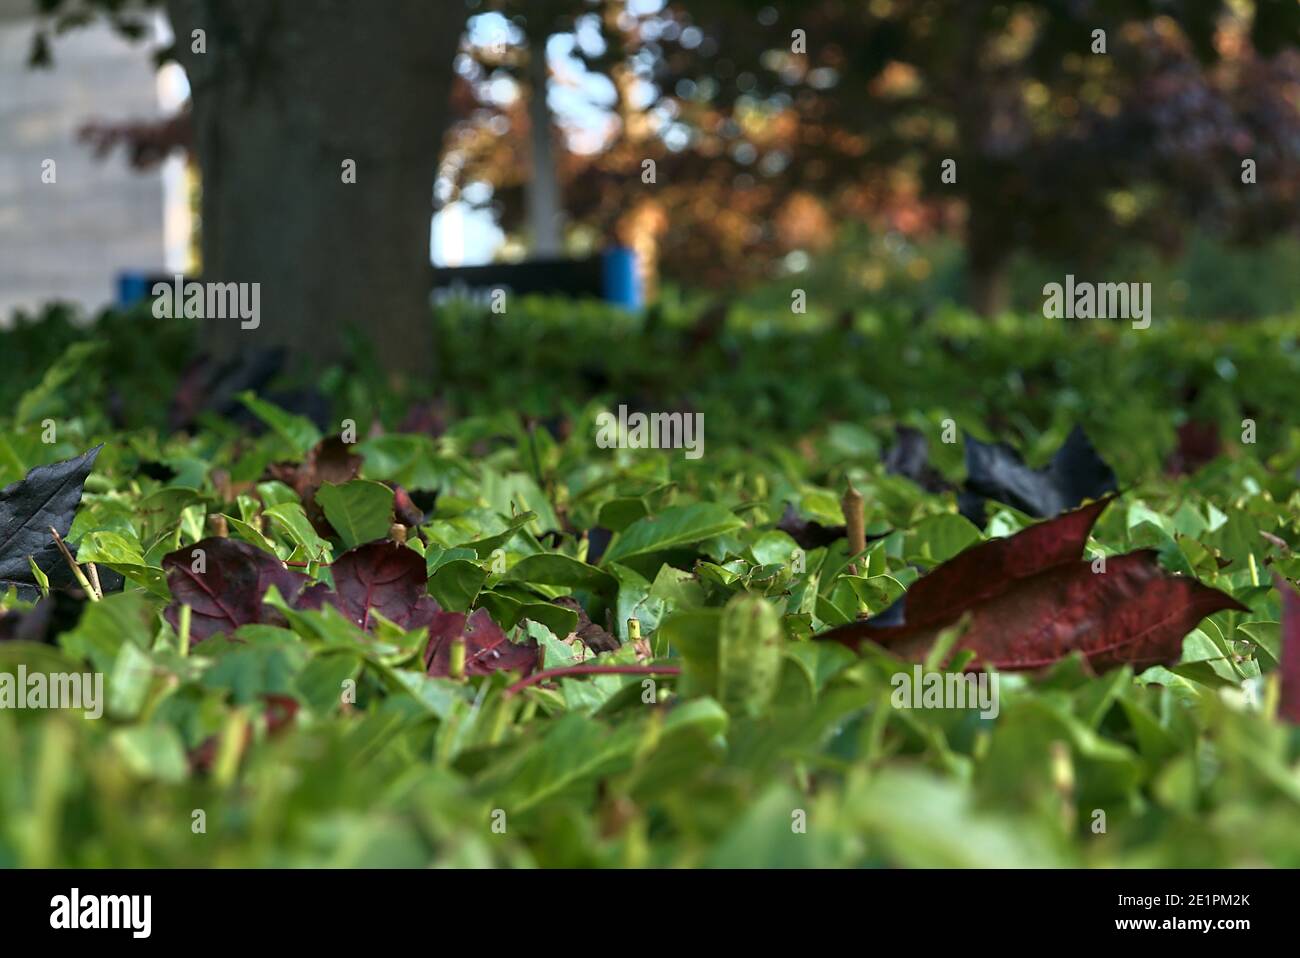 Belle vue sur les feuilles d'érable rouge (Crimson King) couchée sur le laurel (Laurus nobilis) Hedge, Dublin, Irlande. Mise au point douce et sélective. Copier l'espace Banque D'Images